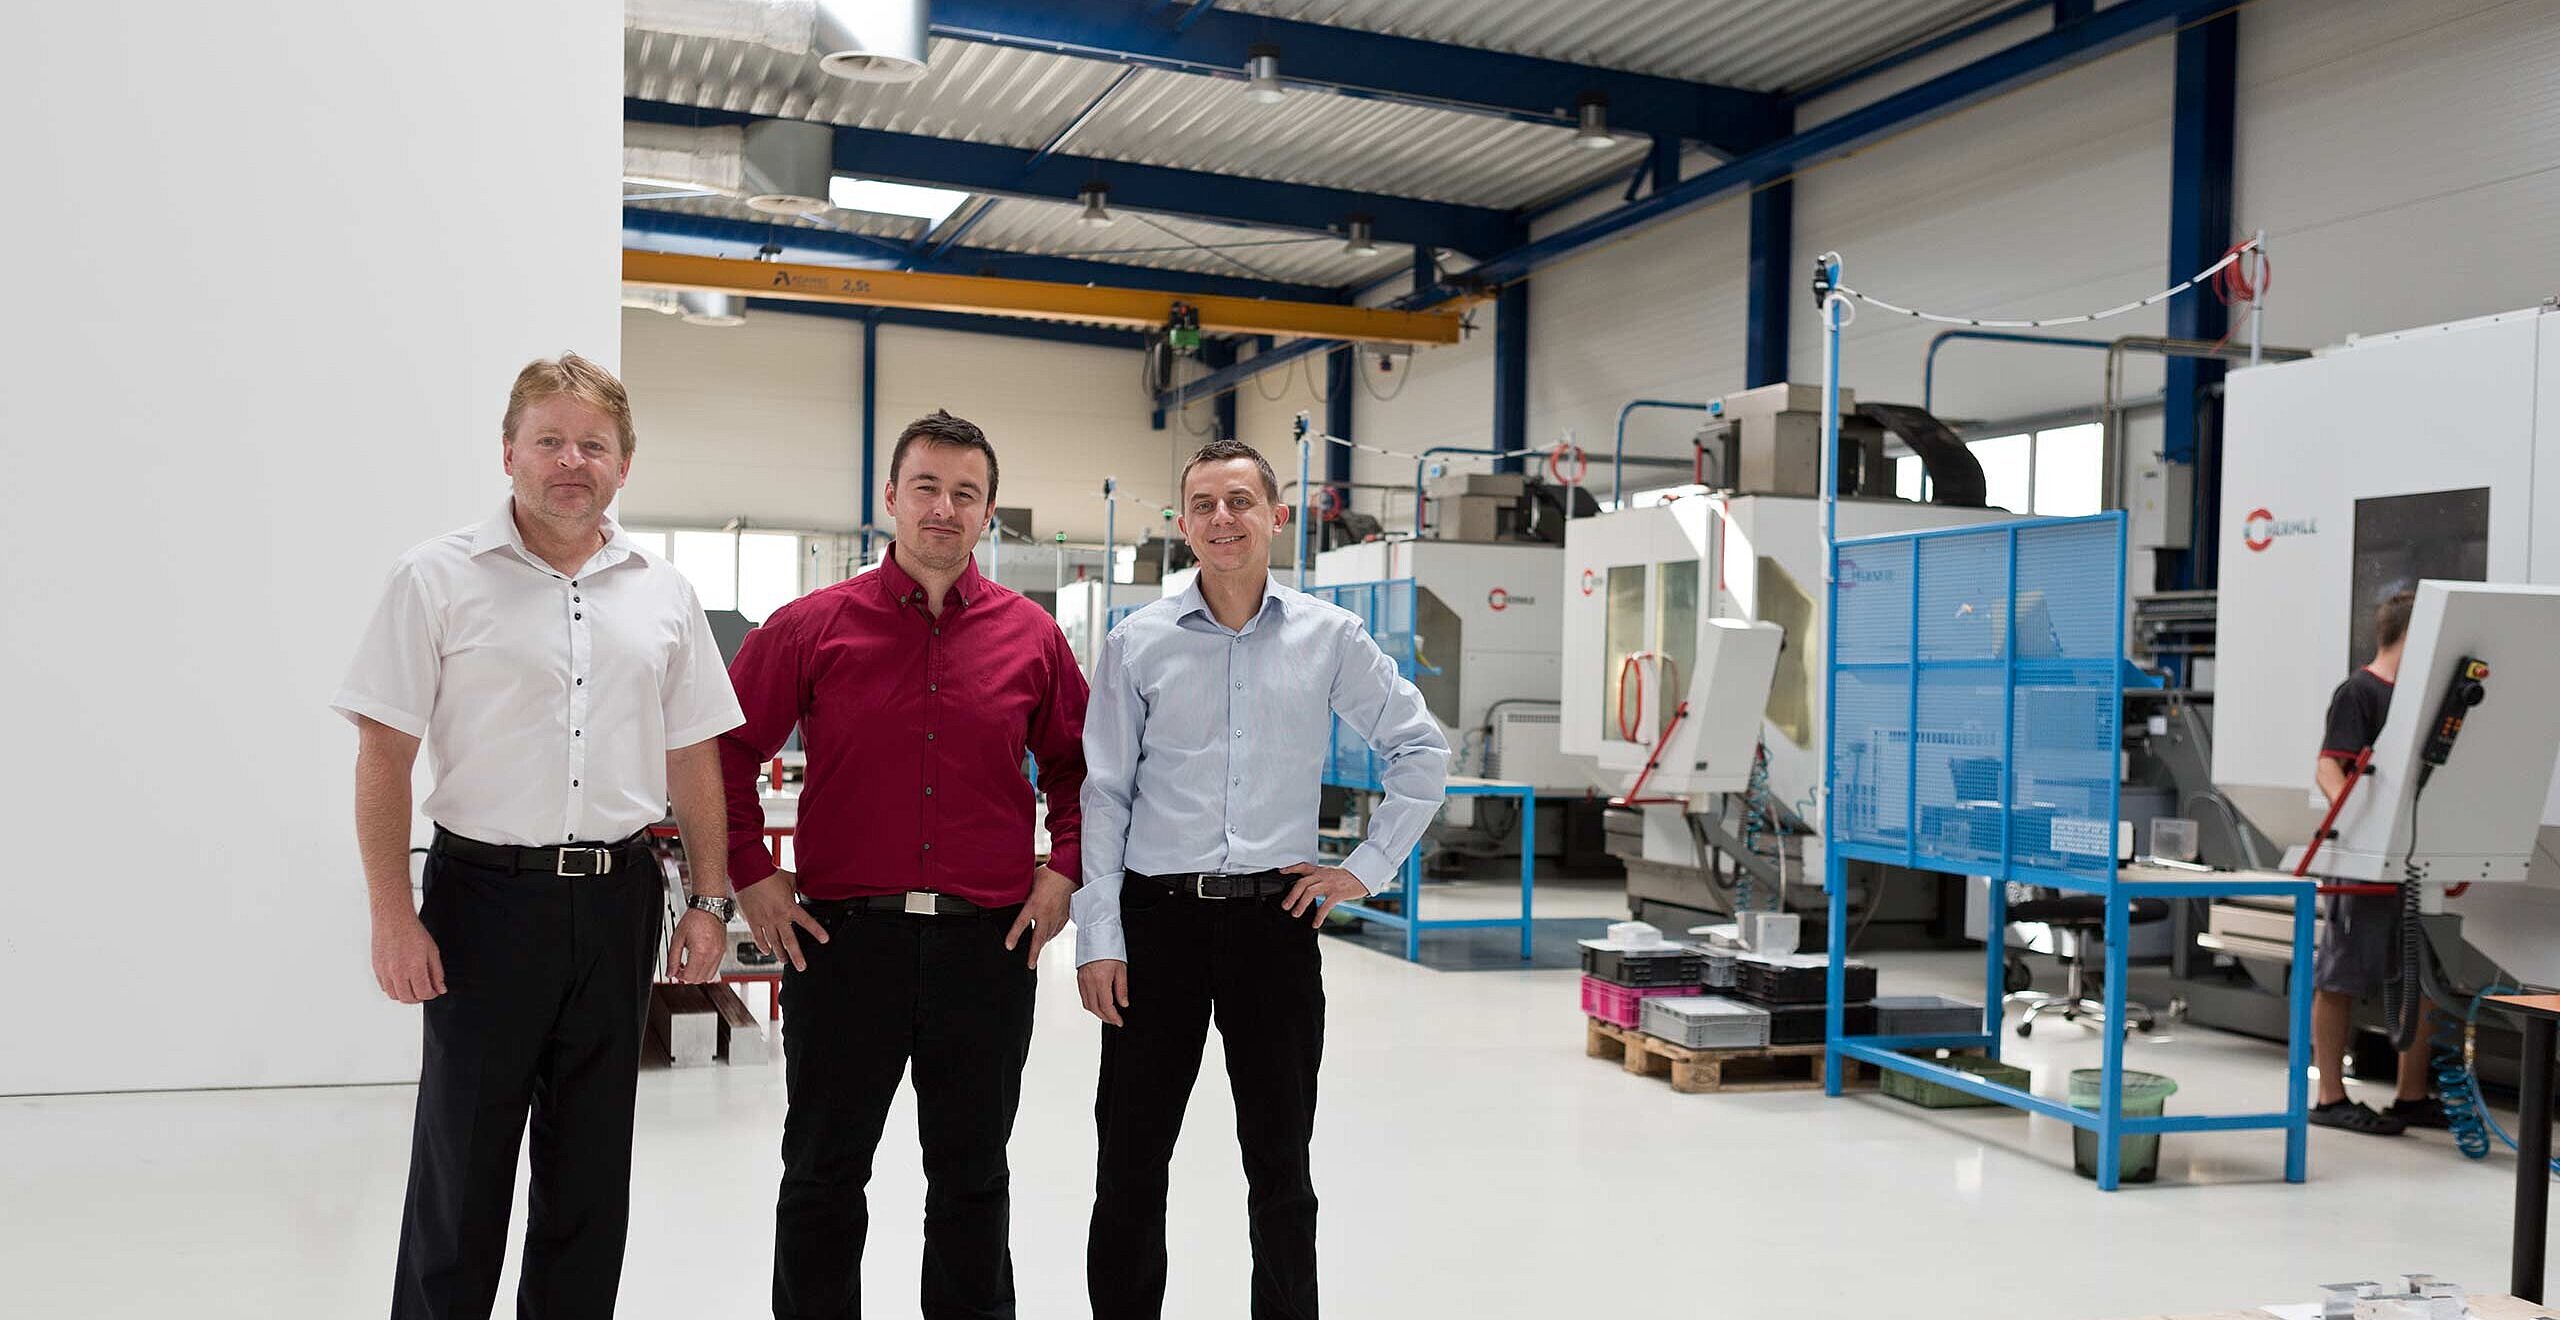 Von rechts nach links Petr Stencel, CEO/Geschäftsführer Vertrieb, Petr Michalek, CTO/Geschäftsführer Produktion, beide von AXIS TECH s. r. o. in CZ-Opava-Katerinky, und Martin Skukalek, Außendienstmitarbeiter der Hermle Ceska Republika